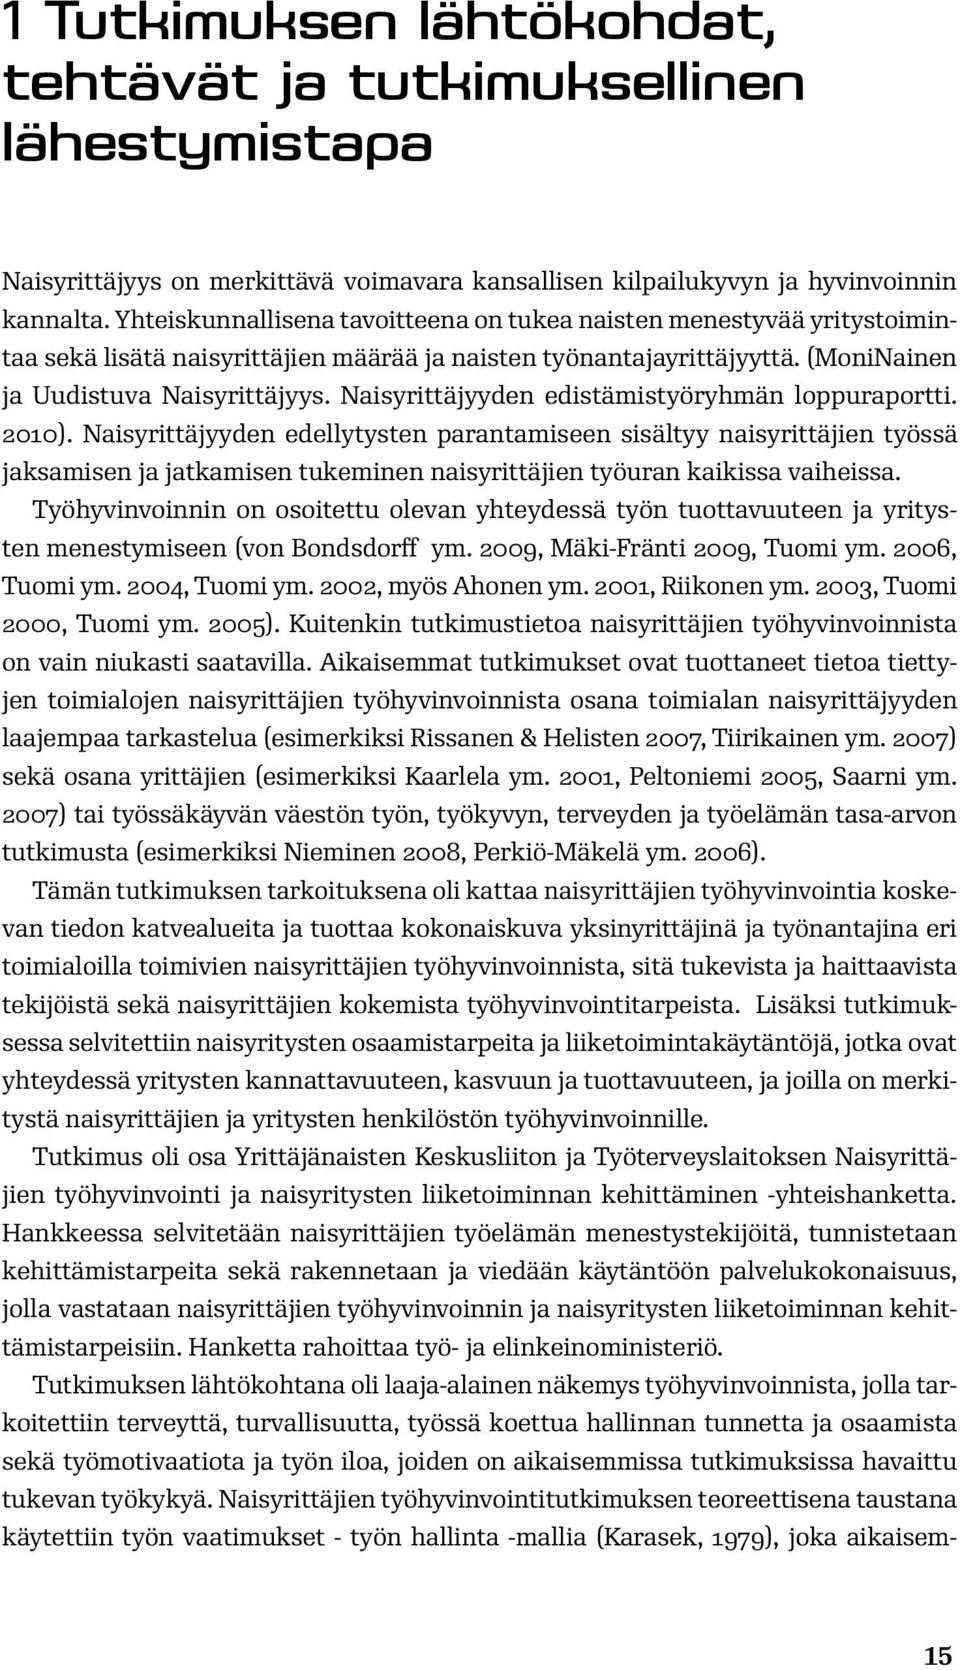 Naisyrittäjyyden edistämistyöryhmän loppuraportti. 2010).